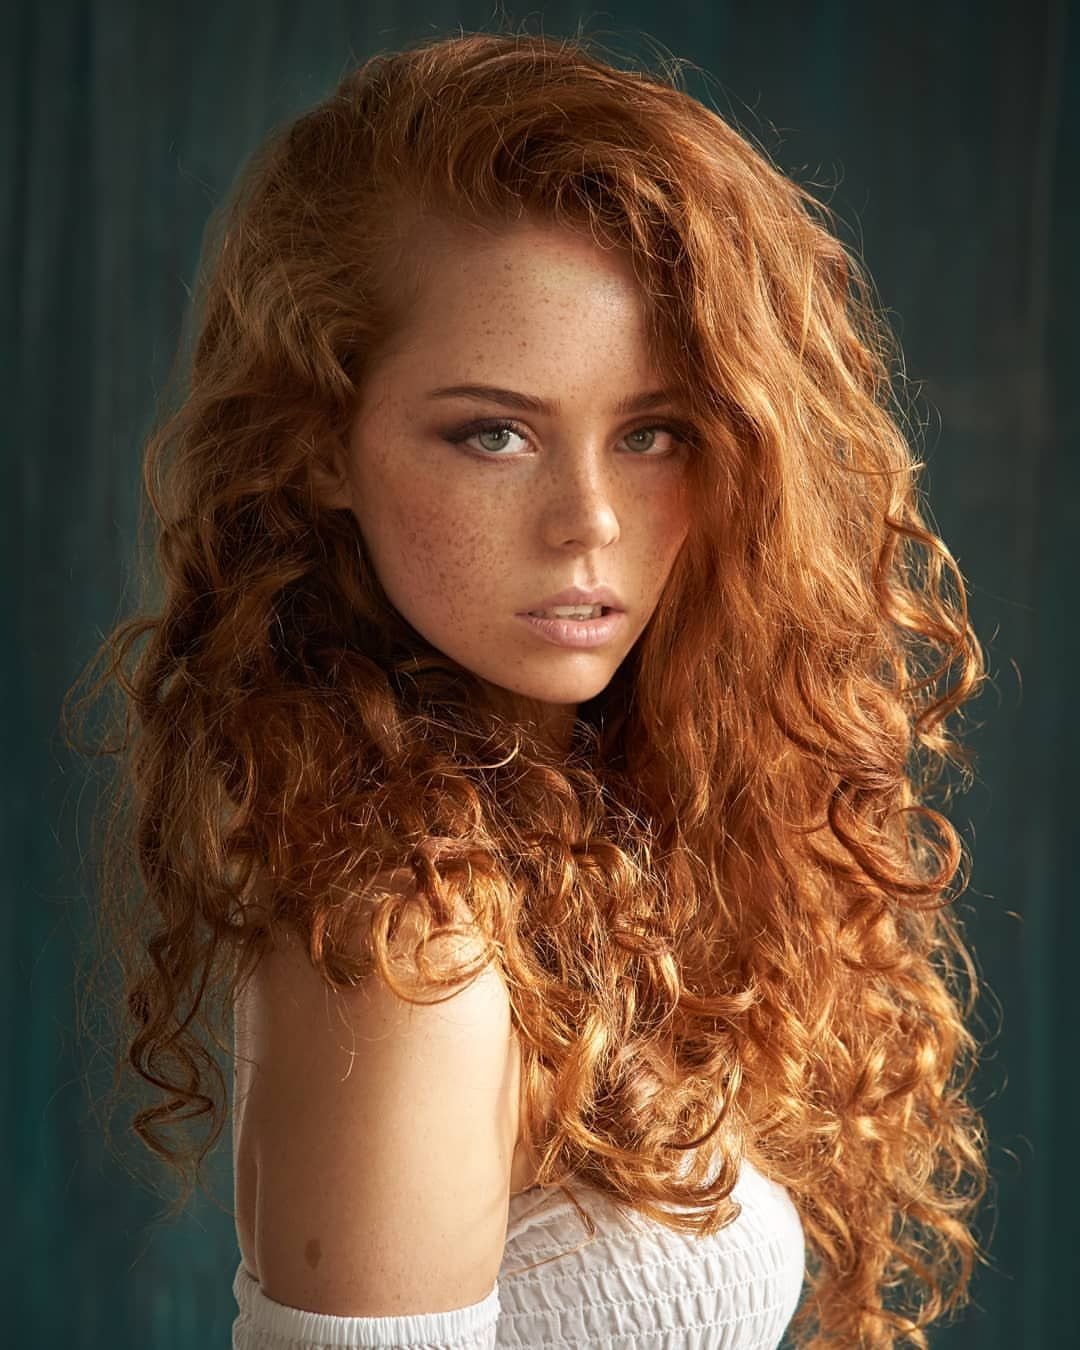 Очень Красивая Девушка С Золотыми Волосами Фото